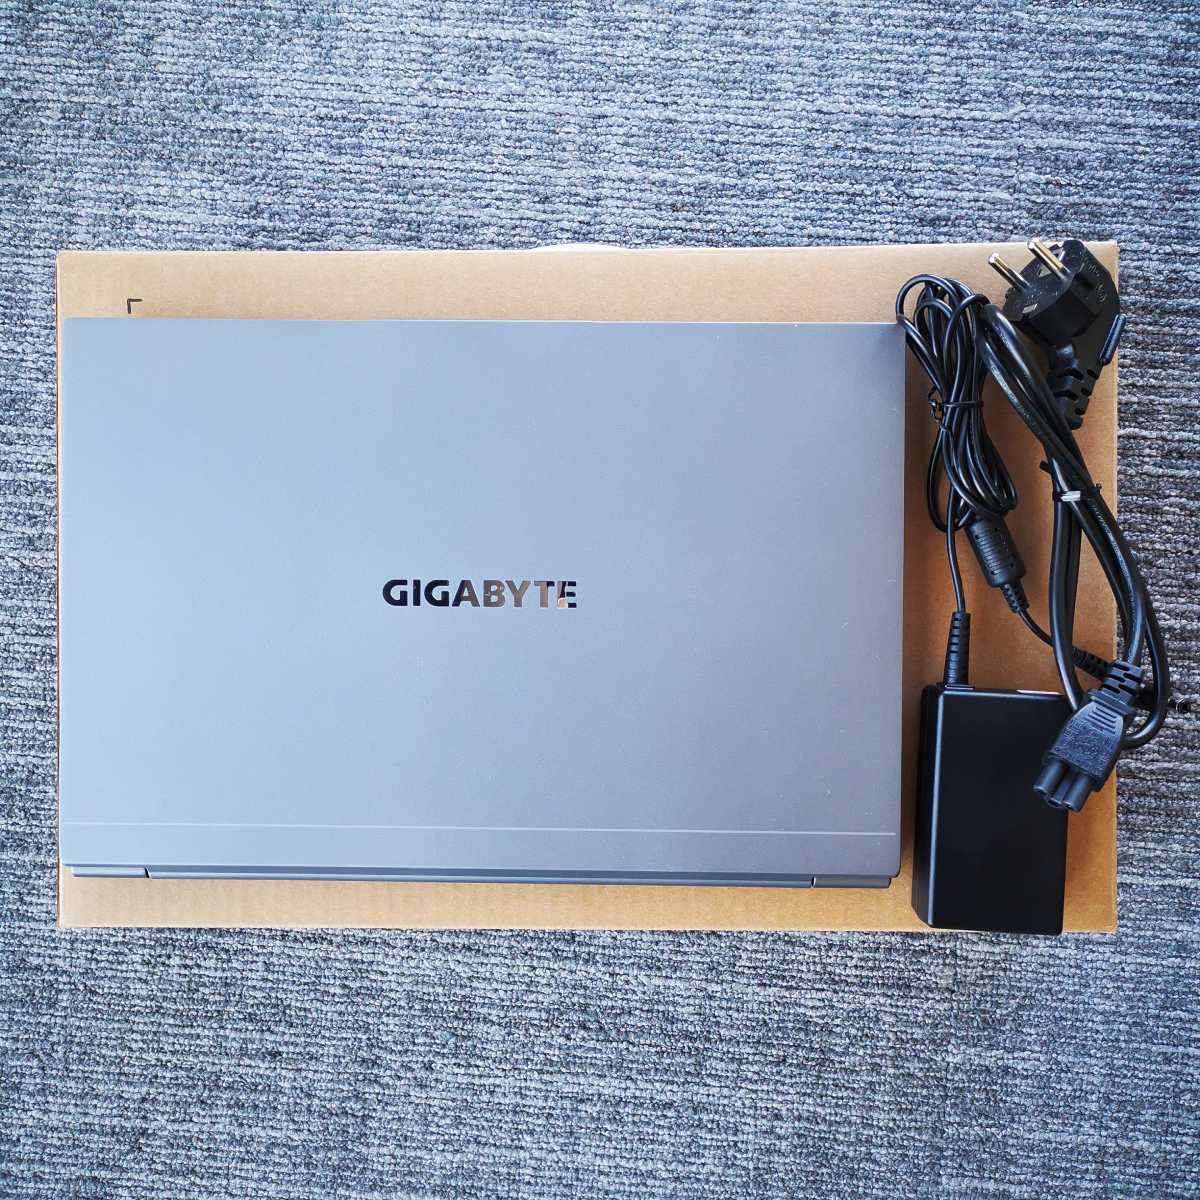 gigabyte-u4-zawartosc-opakowania